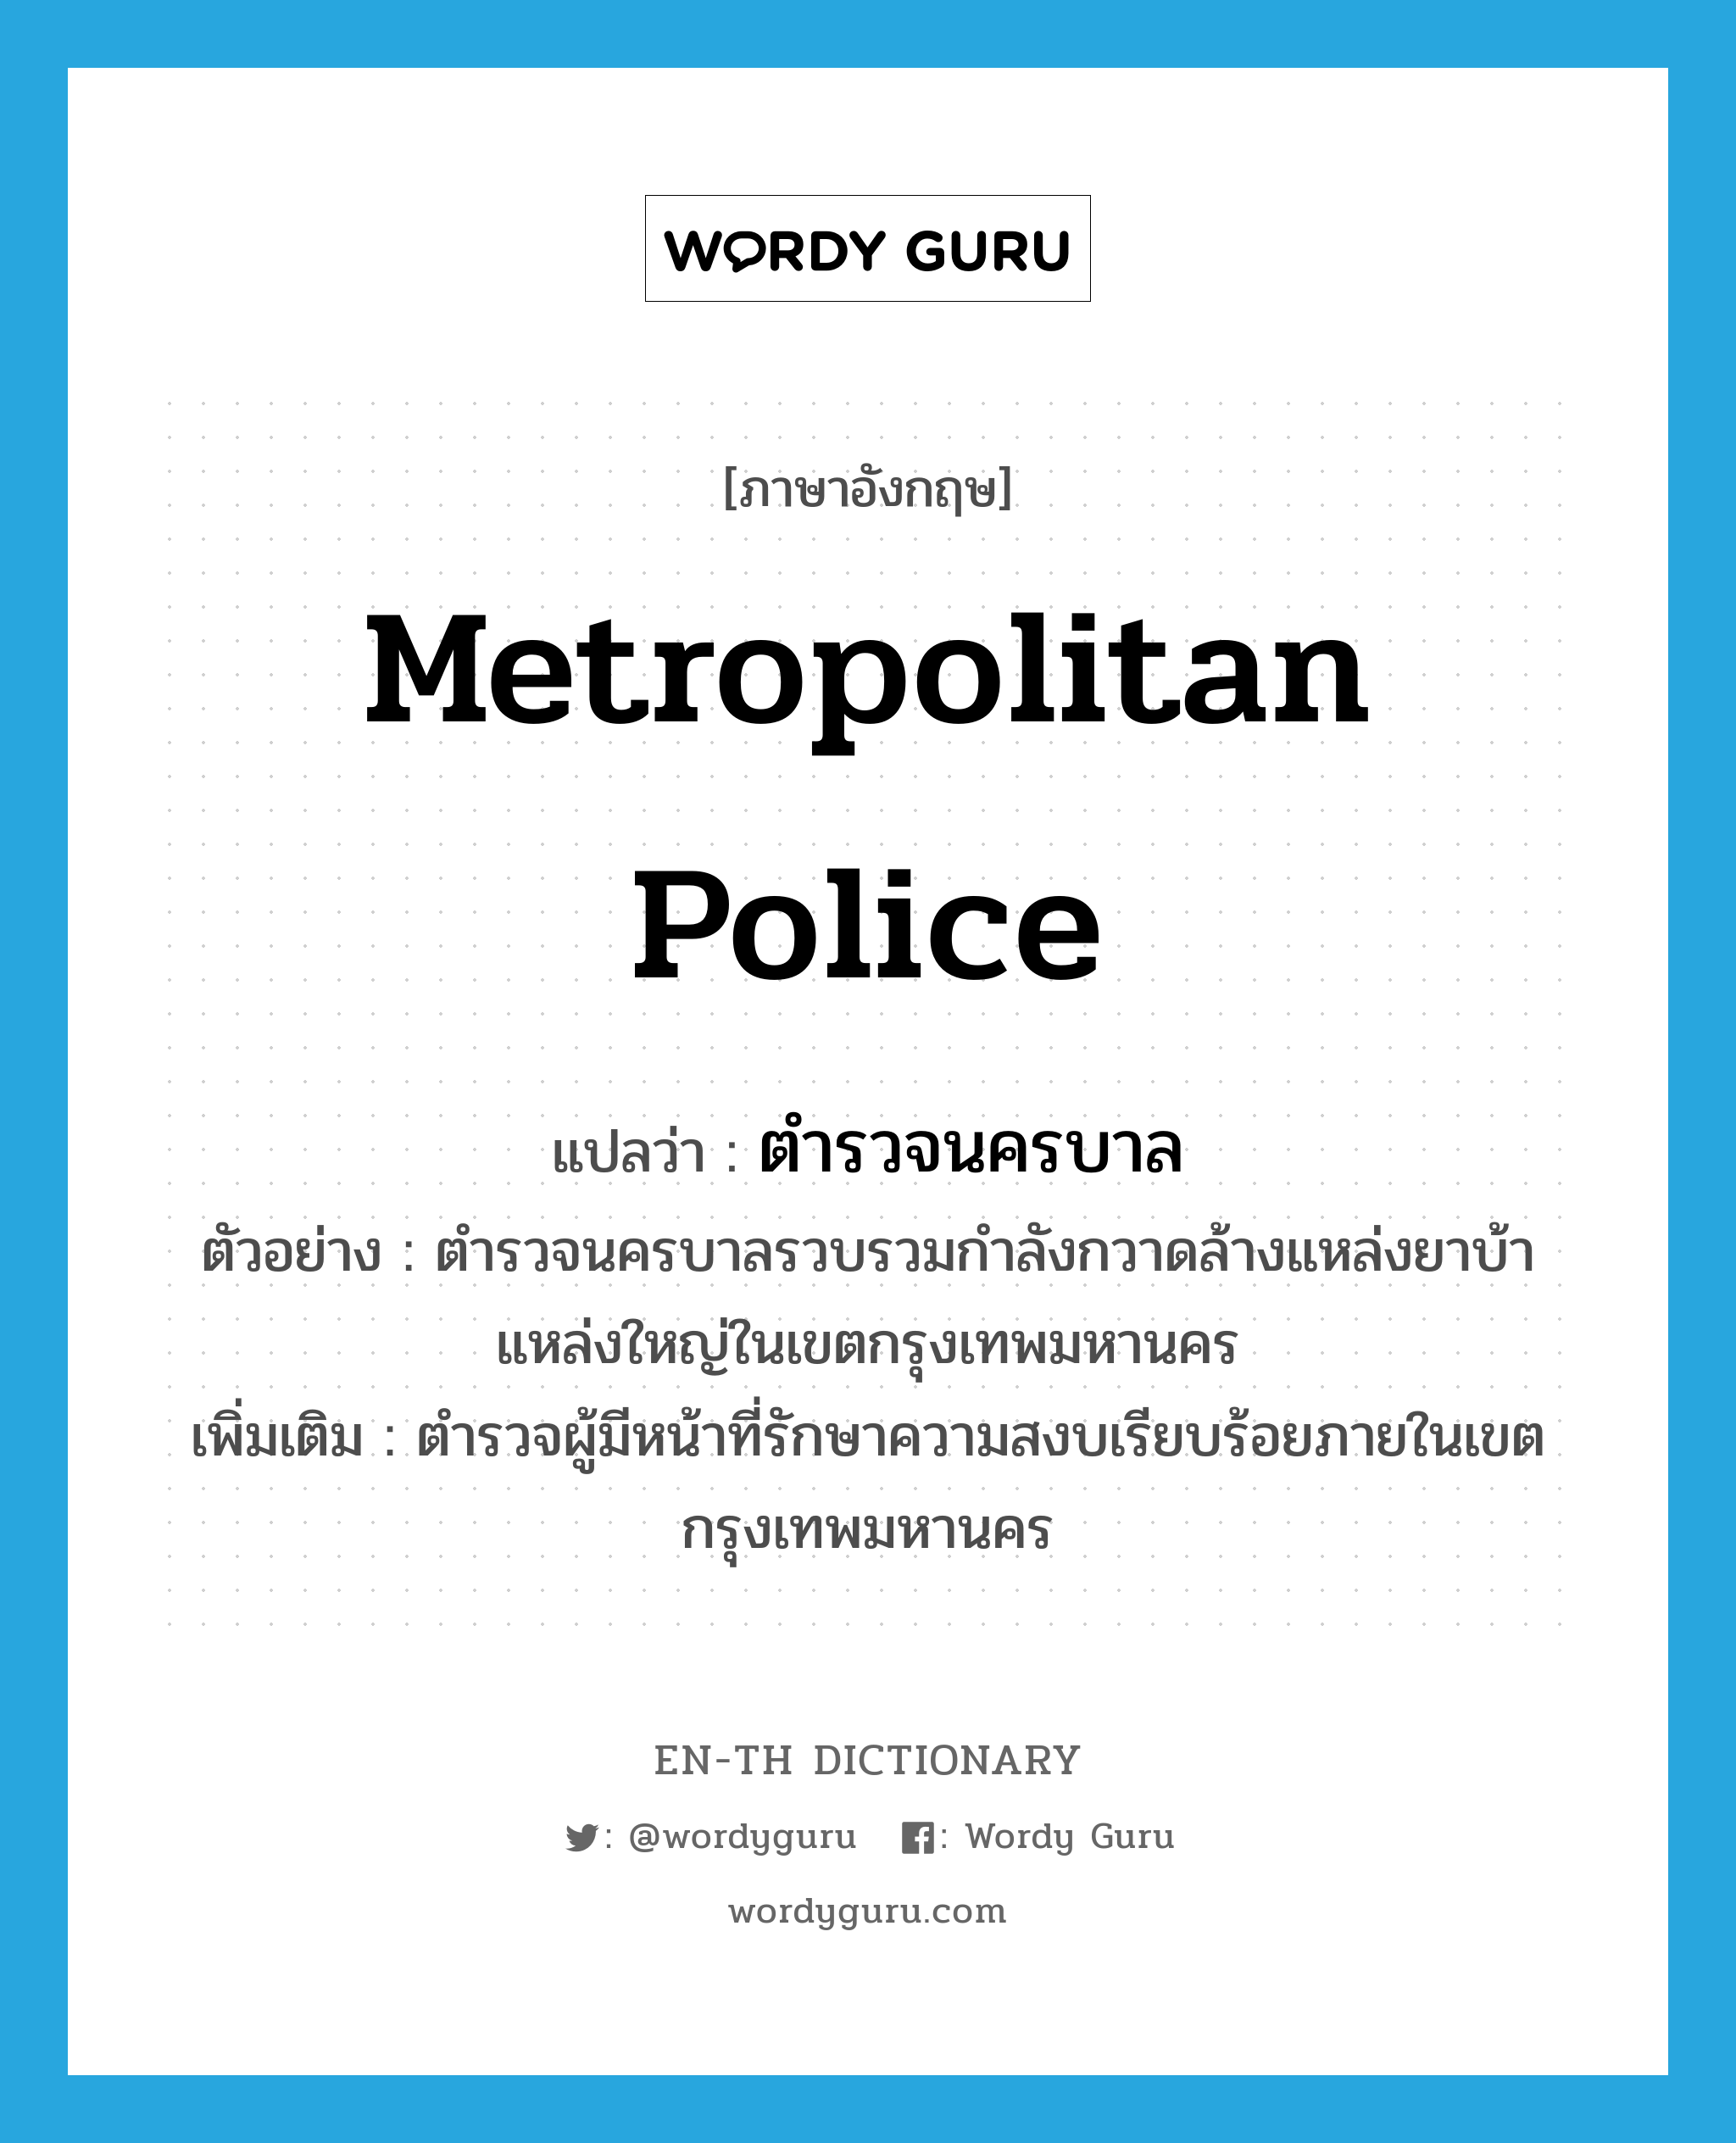 metropolitan police แปลว่า?, คำศัพท์ภาษาอังกฤษ metropolitan police แปลว่า ตำรวจนครบาล ประเภท N ตัวอย่าง ตำรวจนครบาลรวบรวมกำลังกวาดล้างแหล่งยาบ้าแหล่งใหญ่ในเขตกรุงเทพมหานคร เพิ่มเติม ตำรวจผู้มีหน้าที่รักษาความสงบเรียบร้อยภายในเขตกรุงเทพมหานคร หมวด N